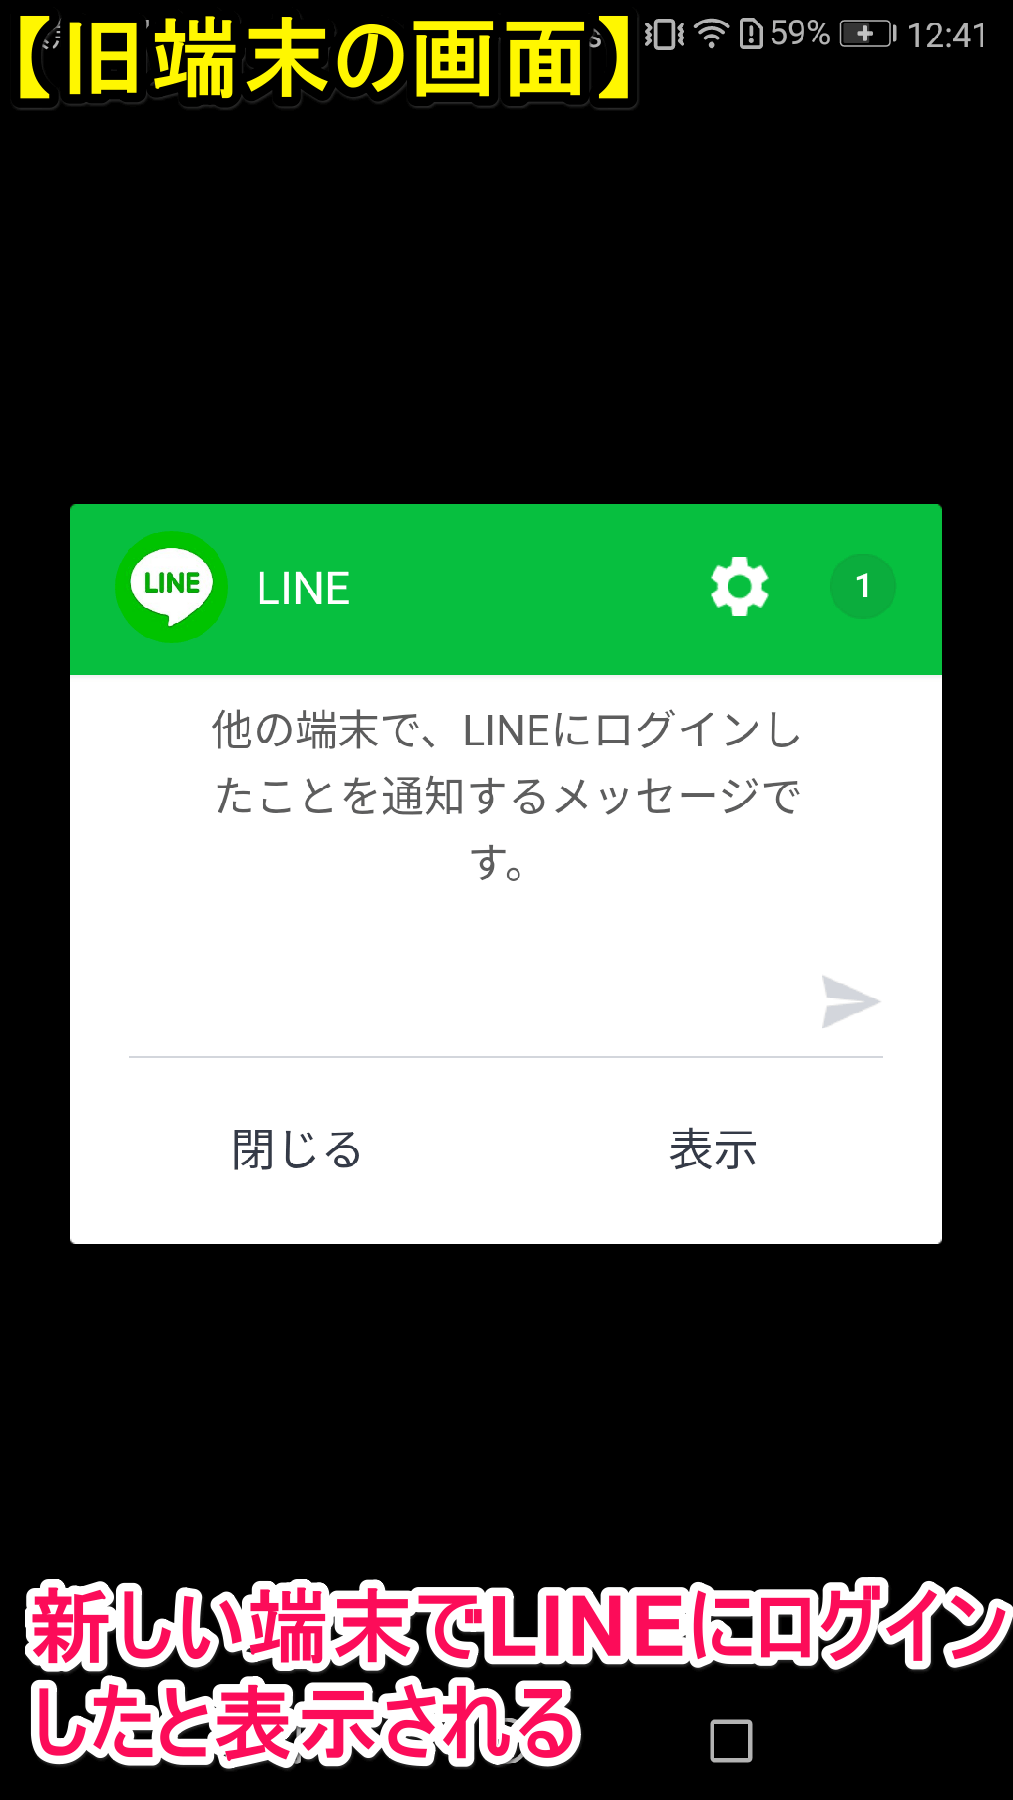 LINE（ライン）の移行元（旧端末）に表示される確認画面